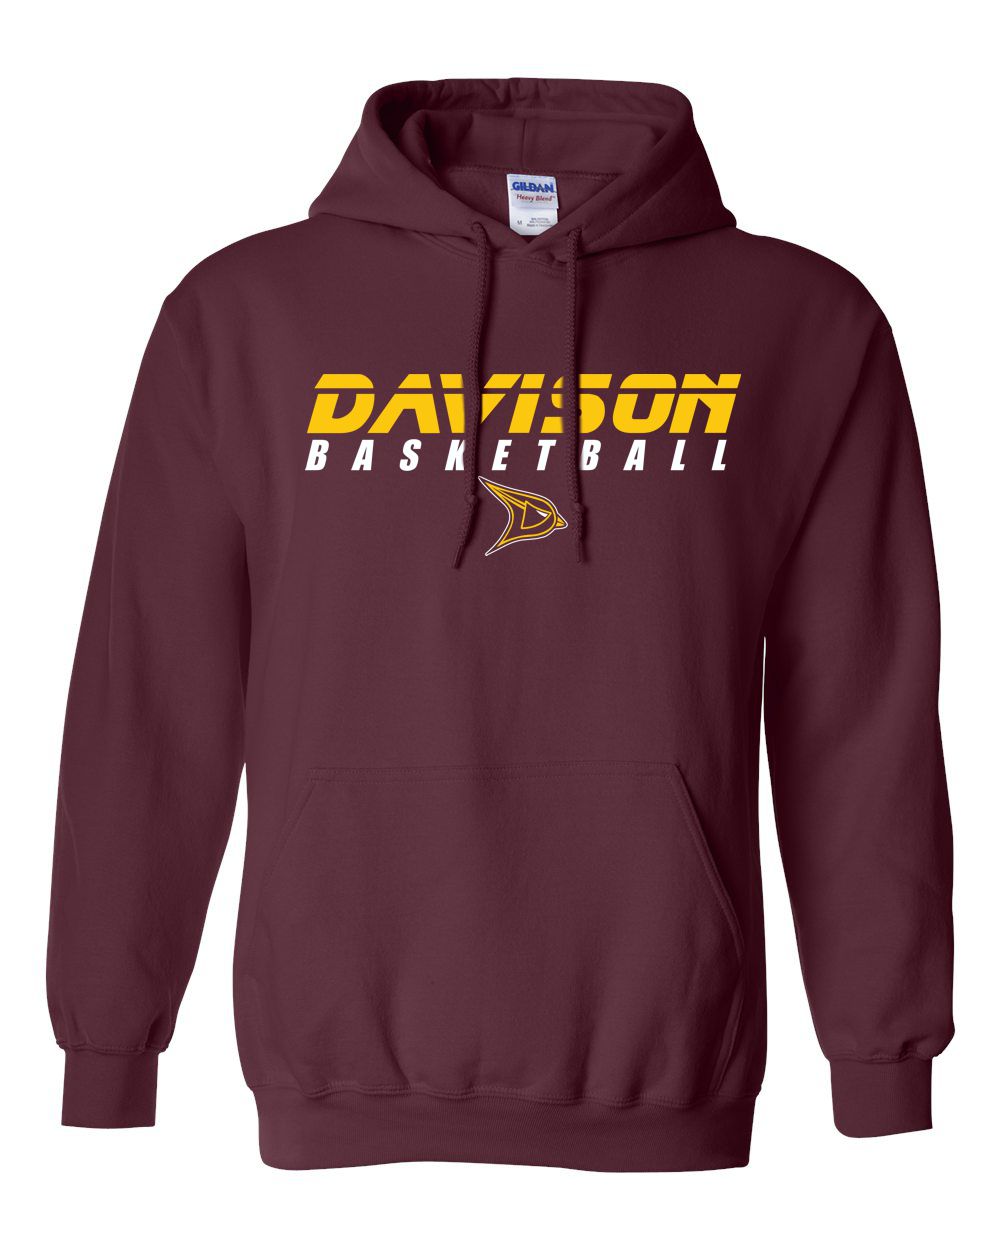 Davison Basketball